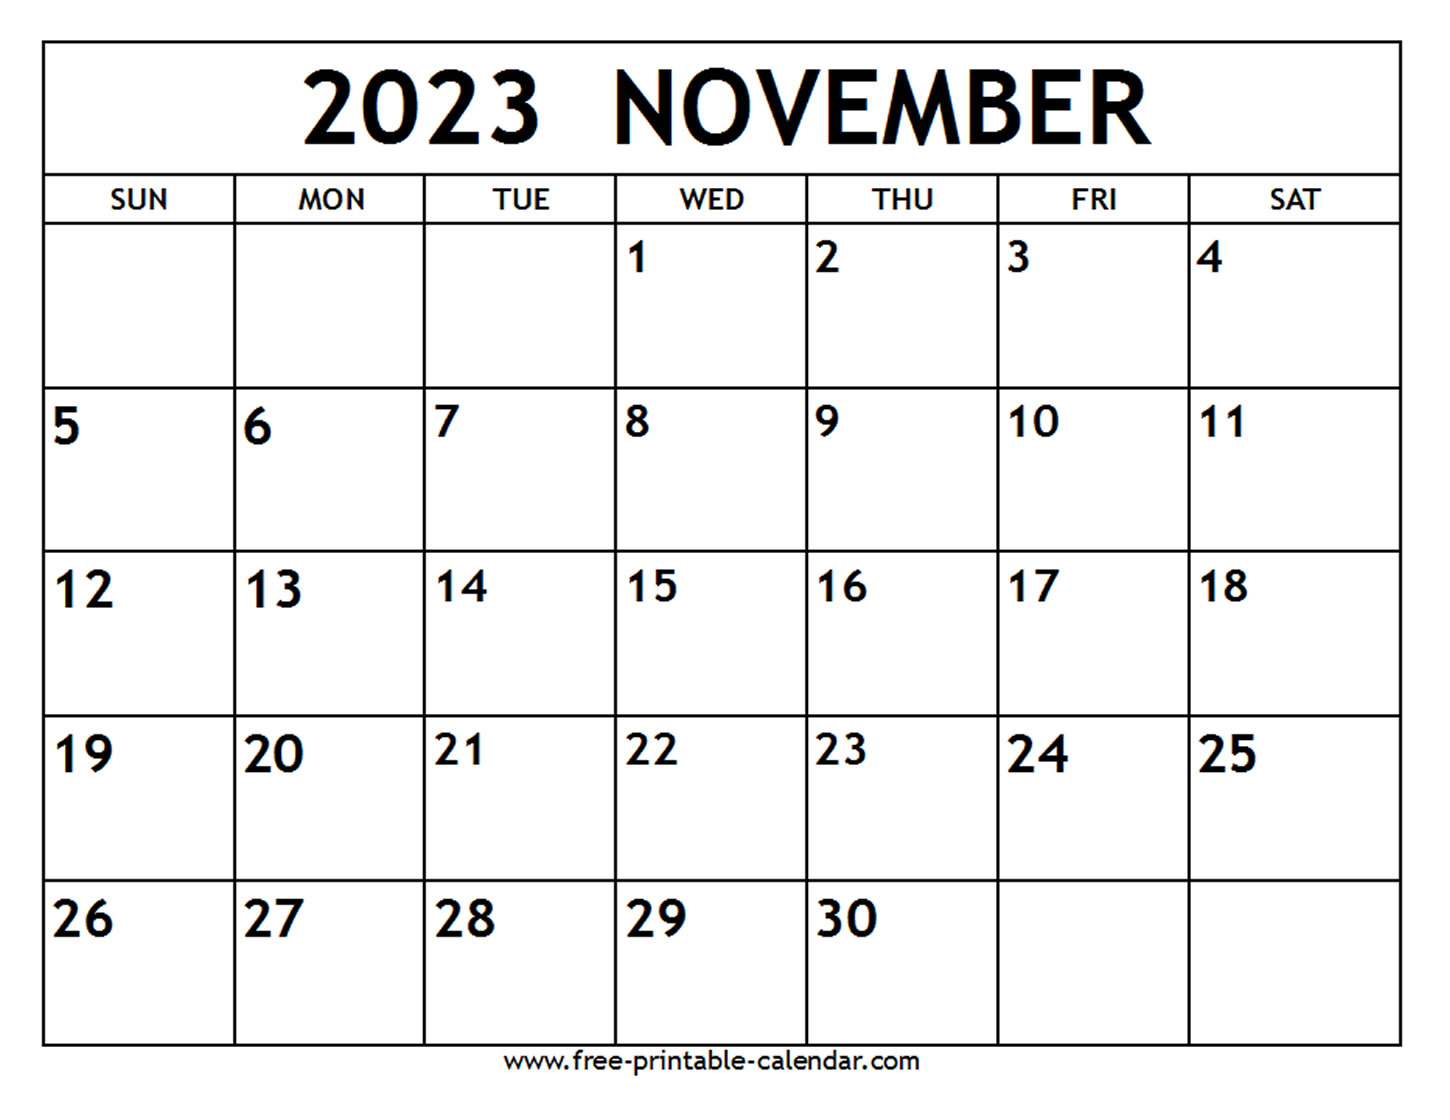 november-2023-printable-calendar-printable-world-holiday